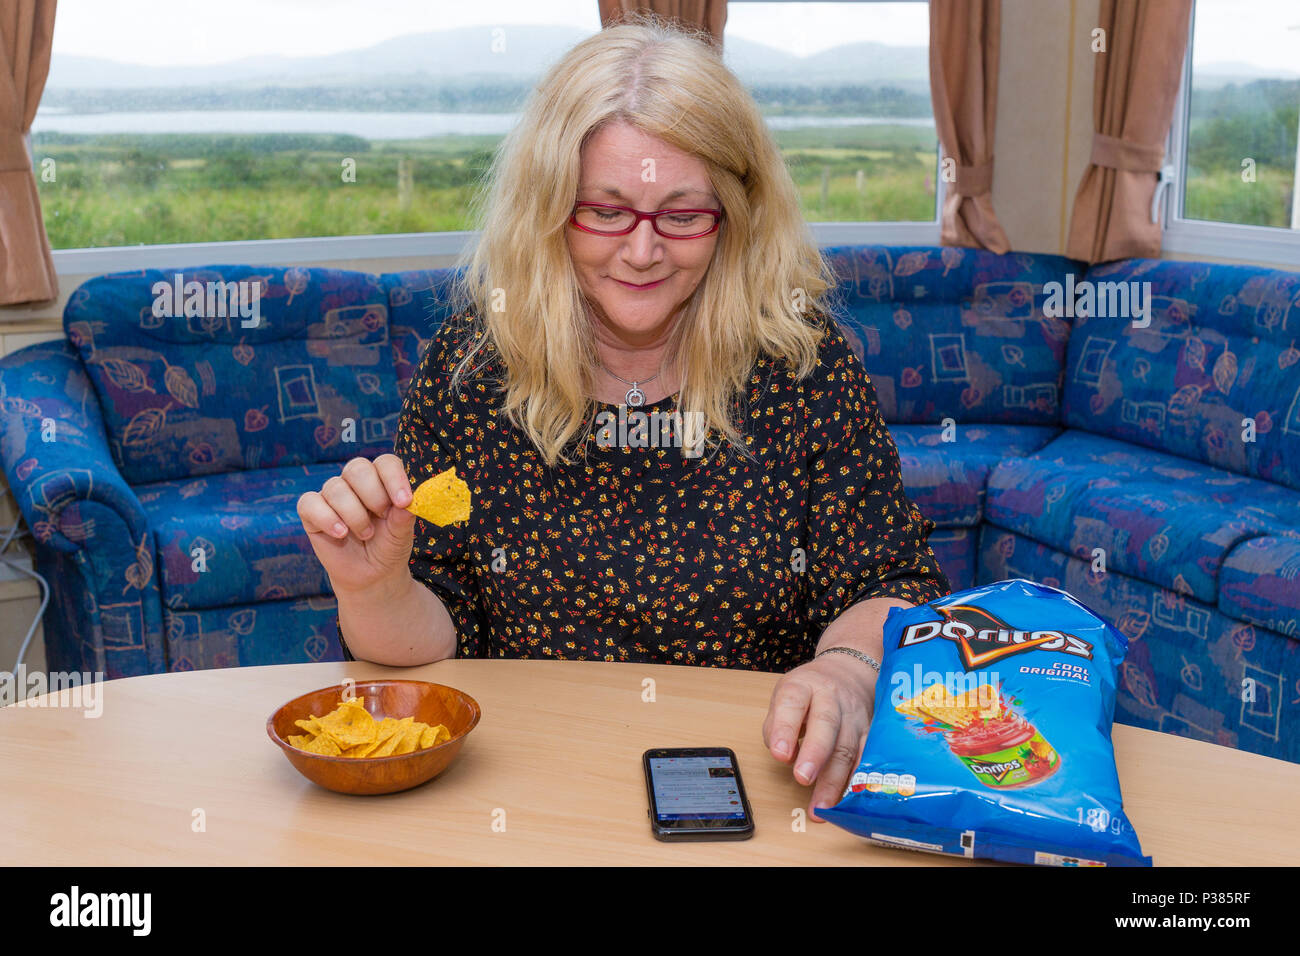 Mujer rubia comiendo Doritos desde una bolsa de tamaño compartido y un pequeño cuenco Foto de stock